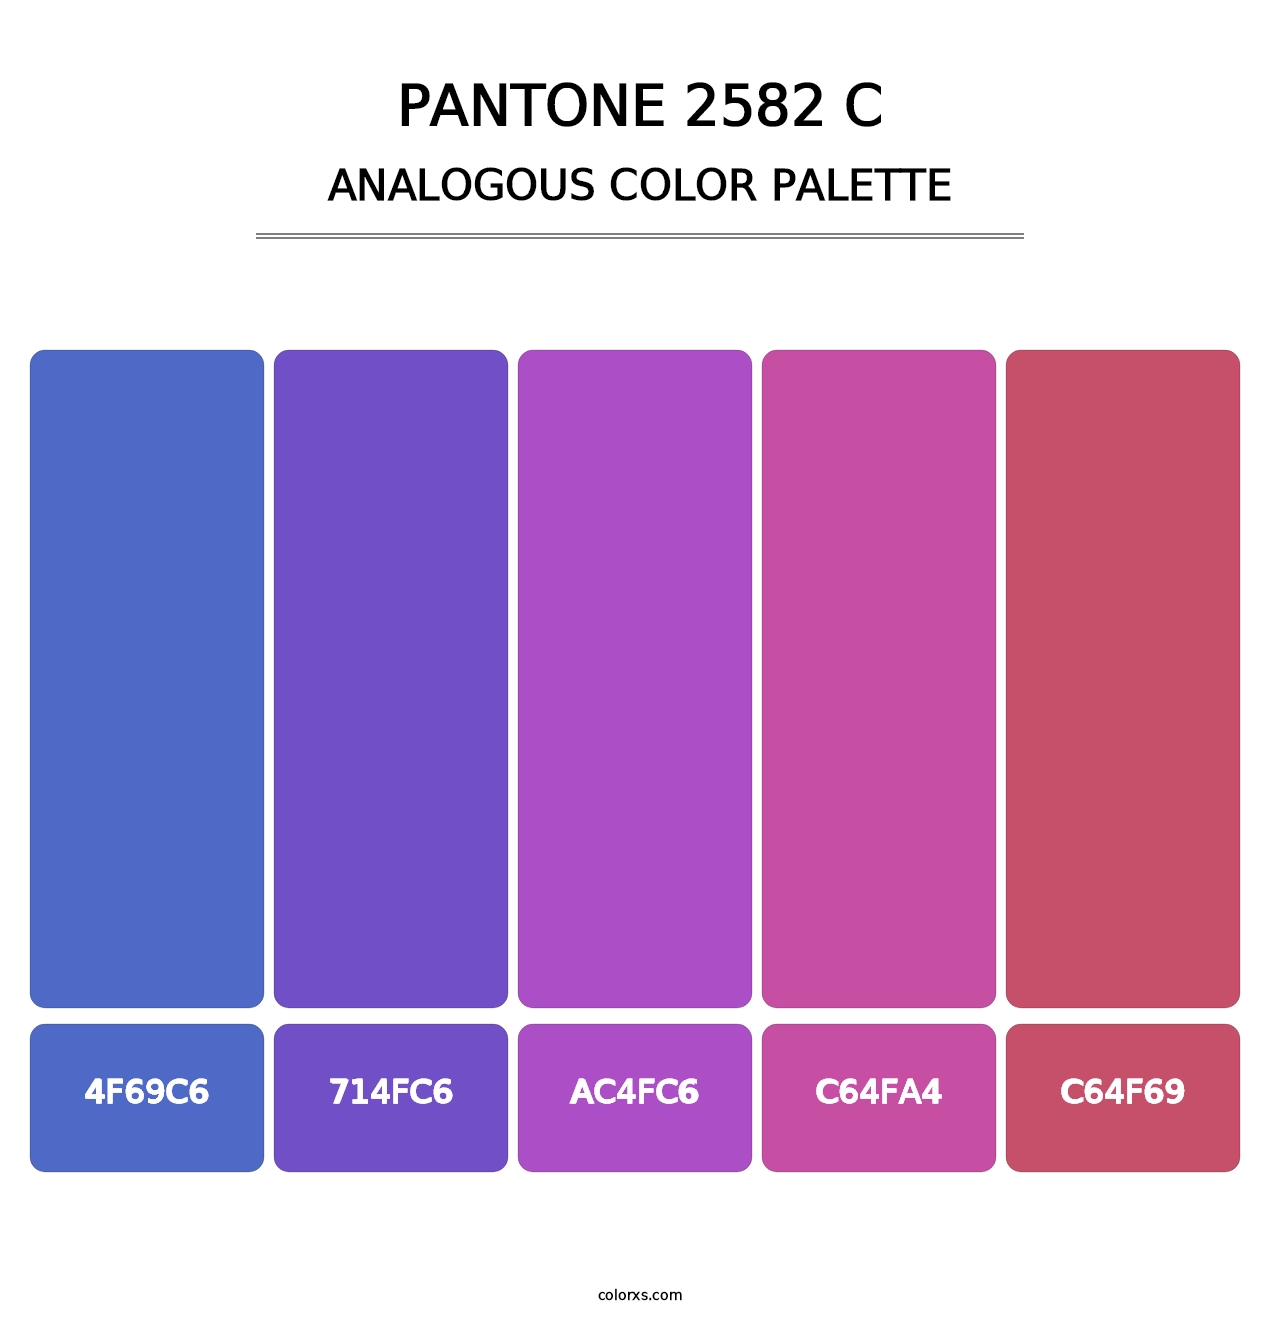 PANTONE 2582 C - Analogous Color Palette